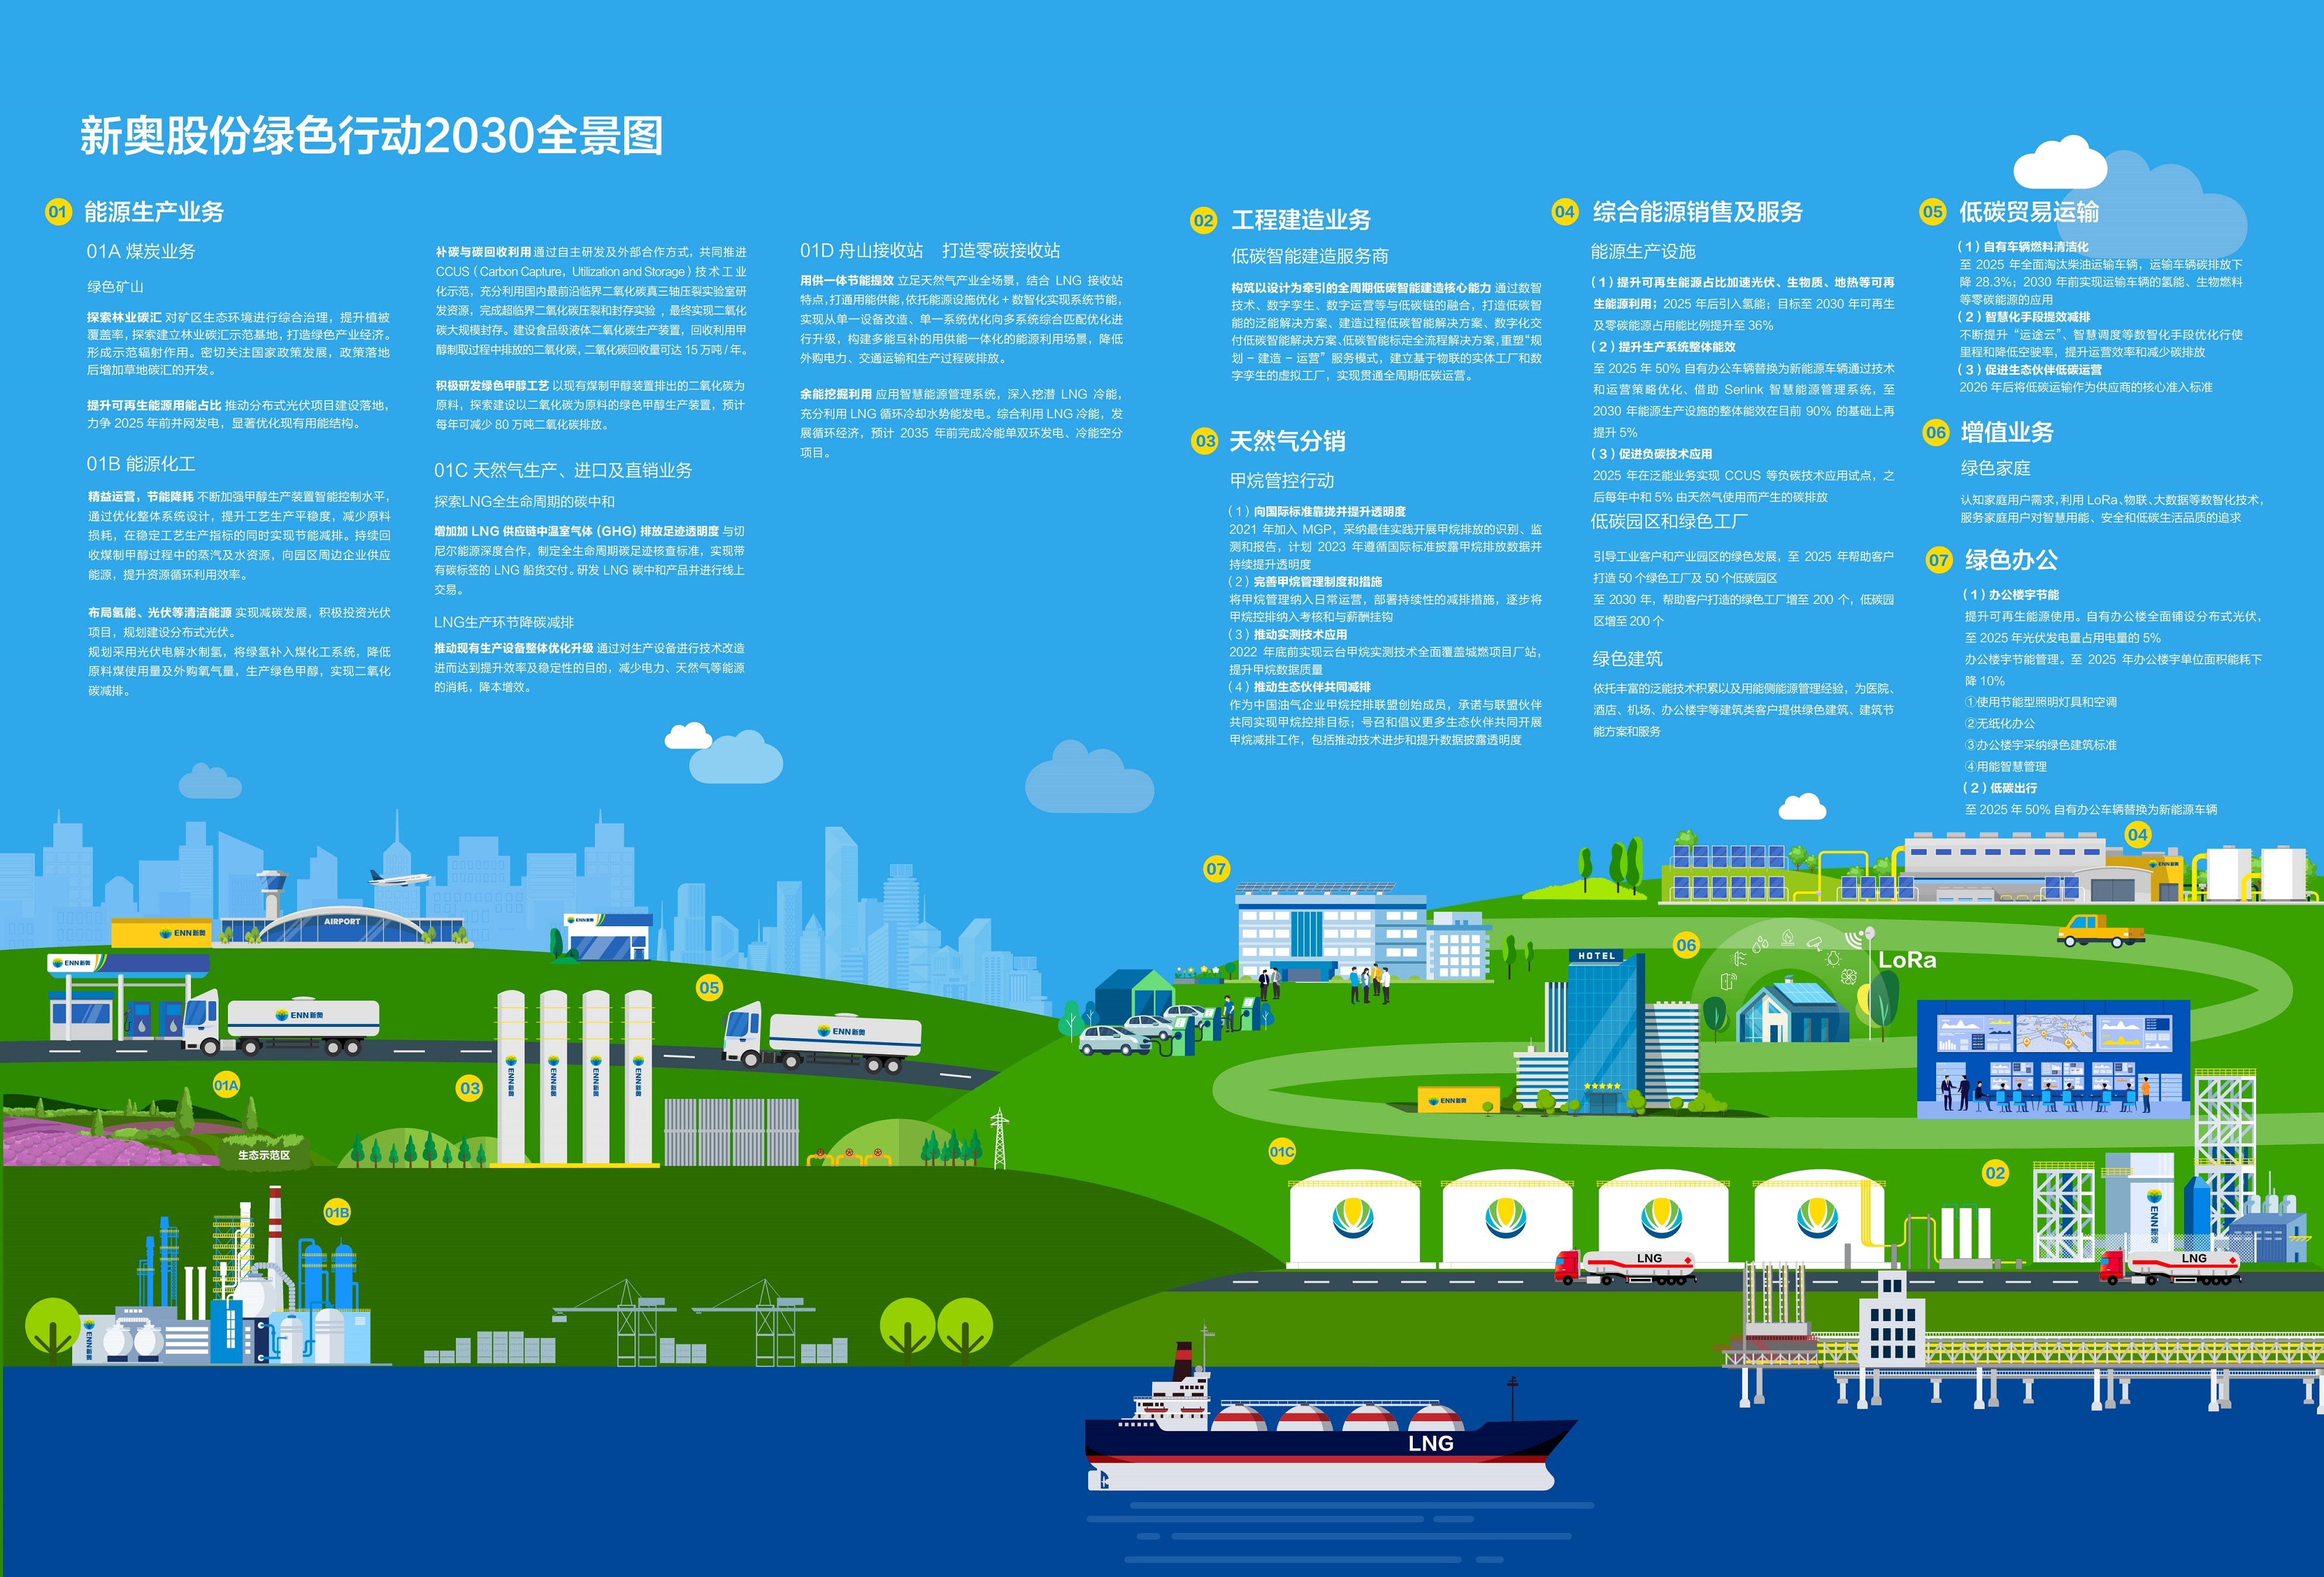 新奥股份首次发布绿色行动全景图及净零碳排放路线图